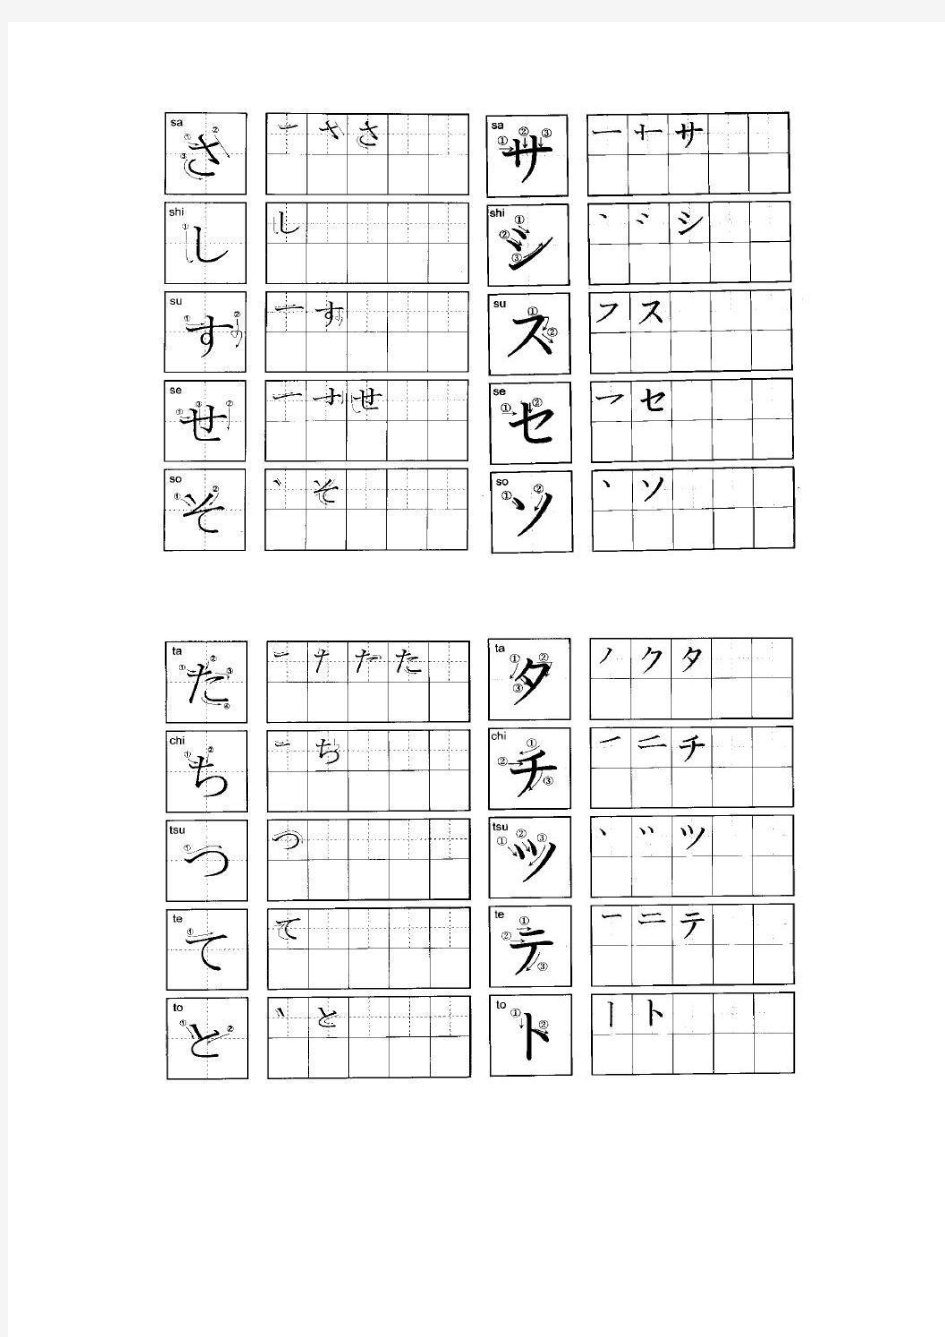 日语的书写及罗马拼音及打字对照表